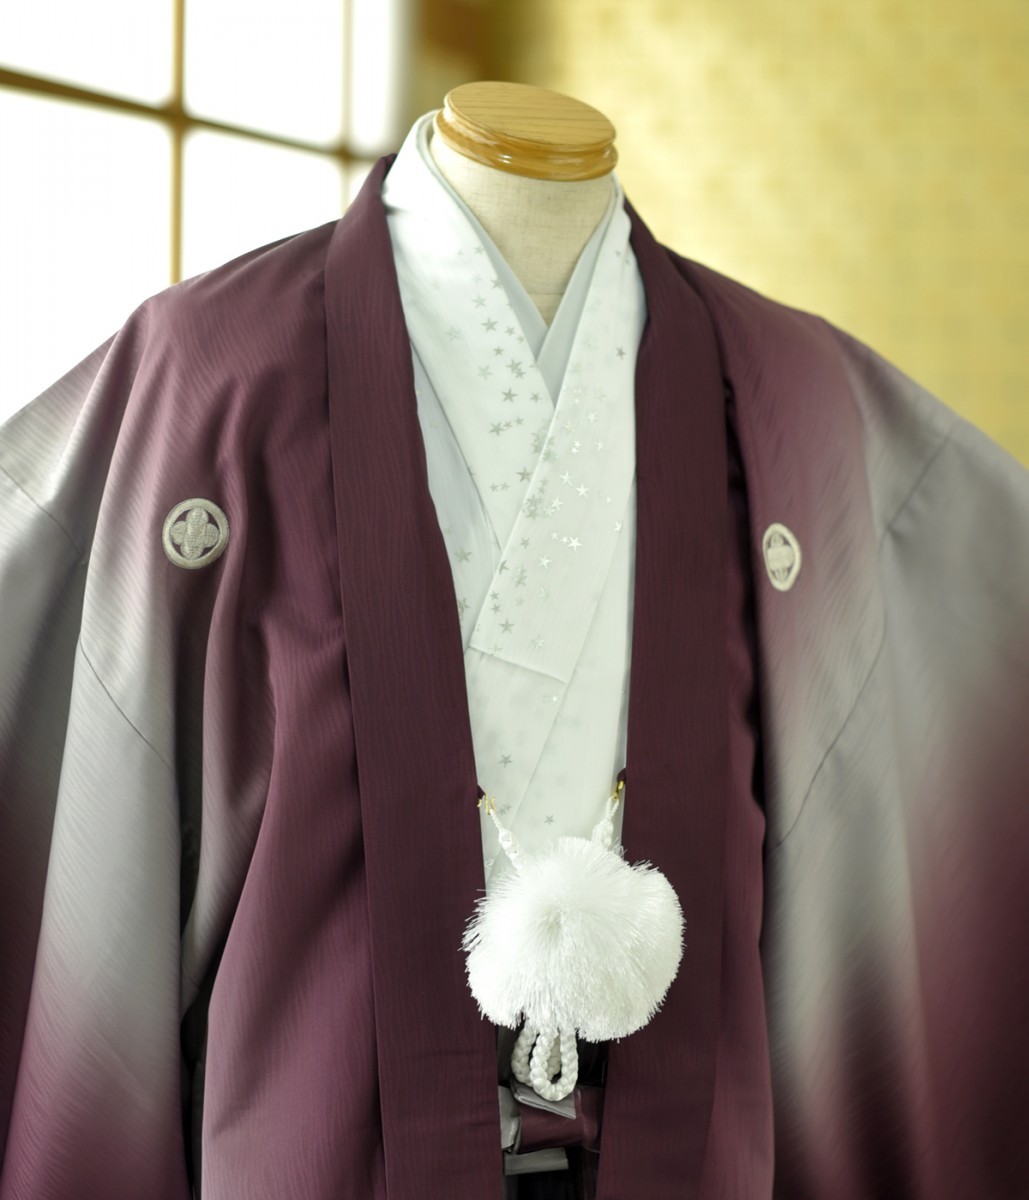 . есть hakama в аренду перо тканый hakama рост 175cm~185cm мужчина церемония окончания свадьба новый . день совершеннолетия hakama мужчина кимоно в аренду . есть hakama hakama в аренду свадьба церемония окончания красочное свадебное кимоно Event 